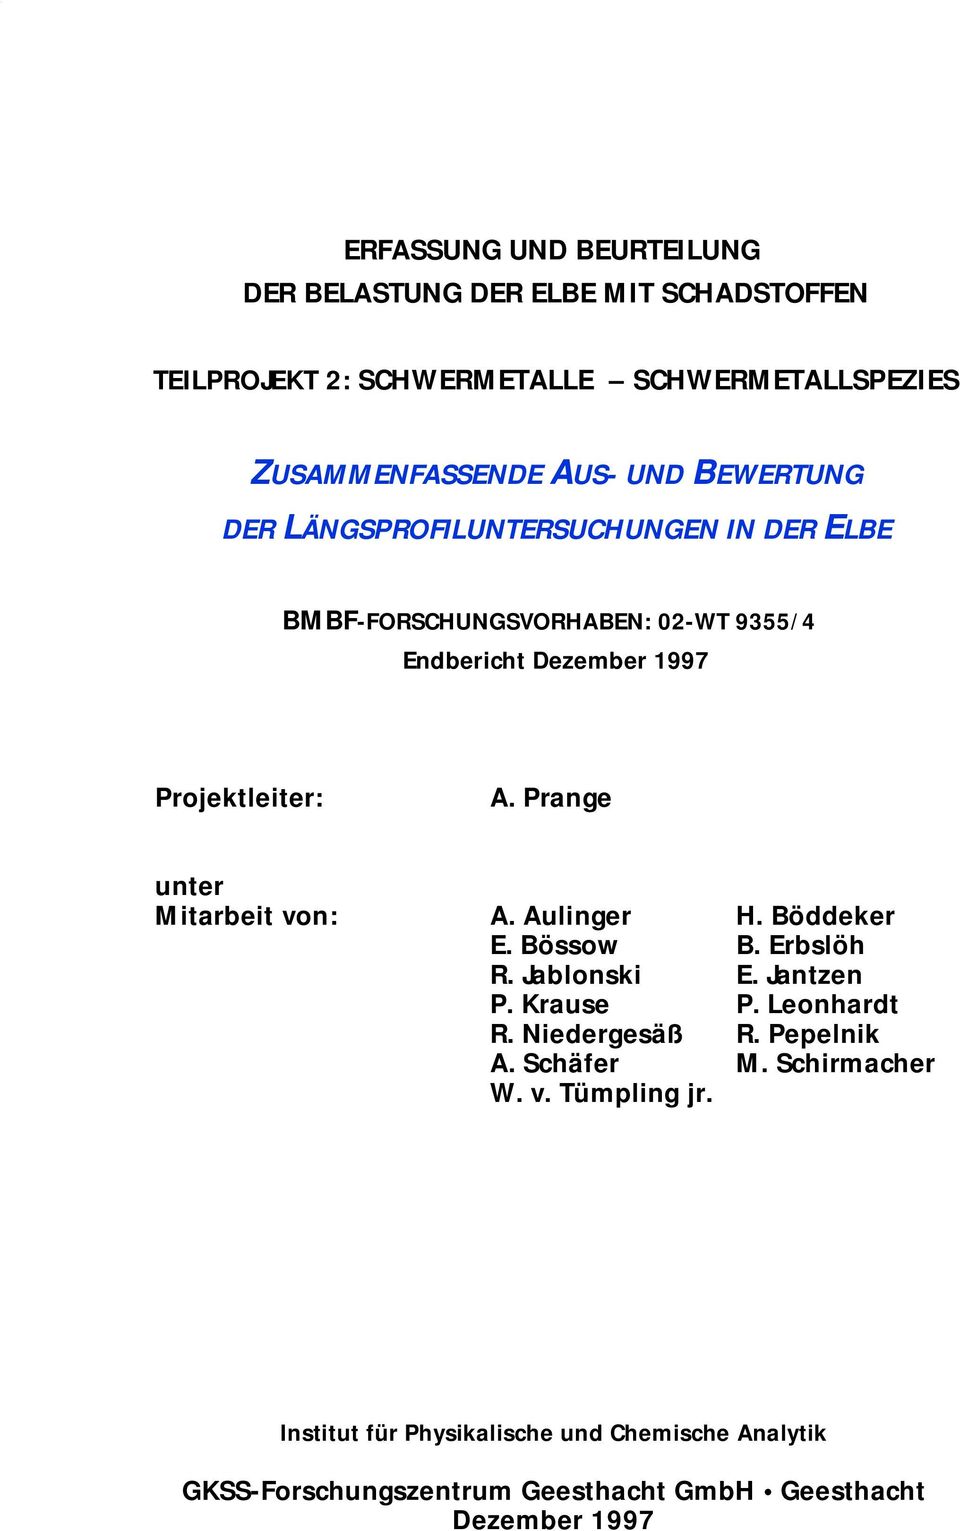 Prange unter Mitarbeit von: A. Aulinger H. Böddeker E. Bössow B. Erbslöh R. Jablonski E. Jantzen P. Krause P. Leonhardt R. Niedergesäß R.